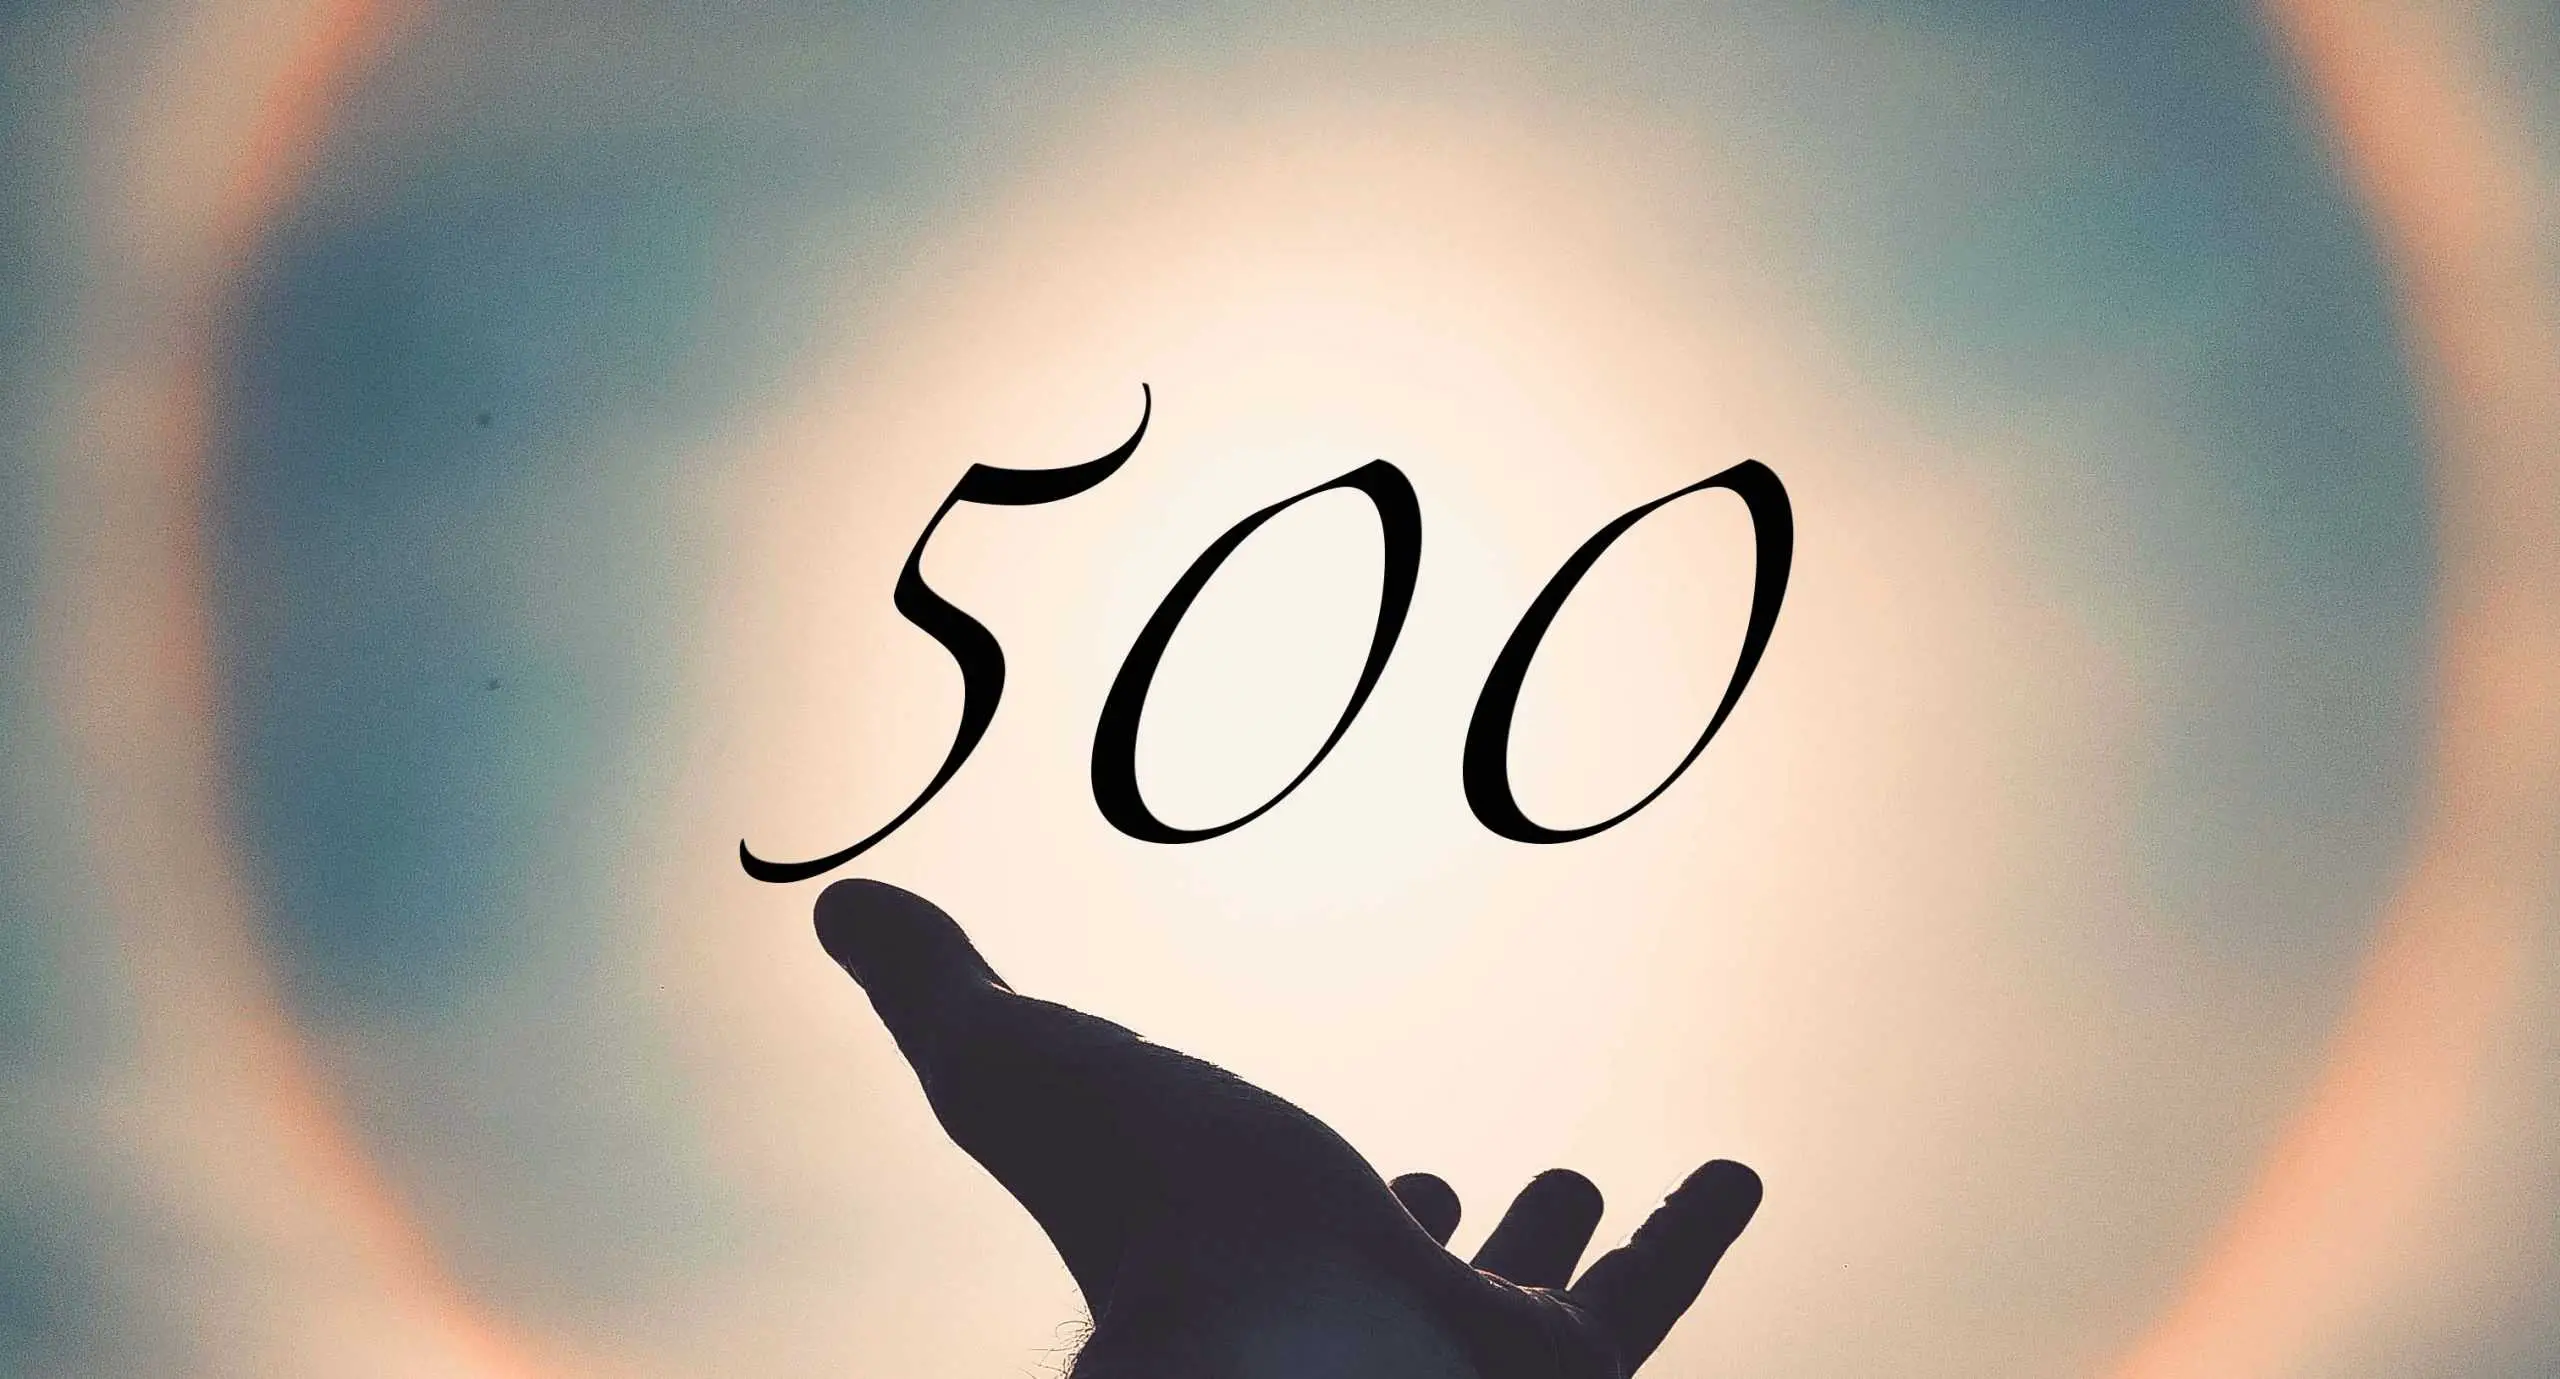 Signification du nombre 500